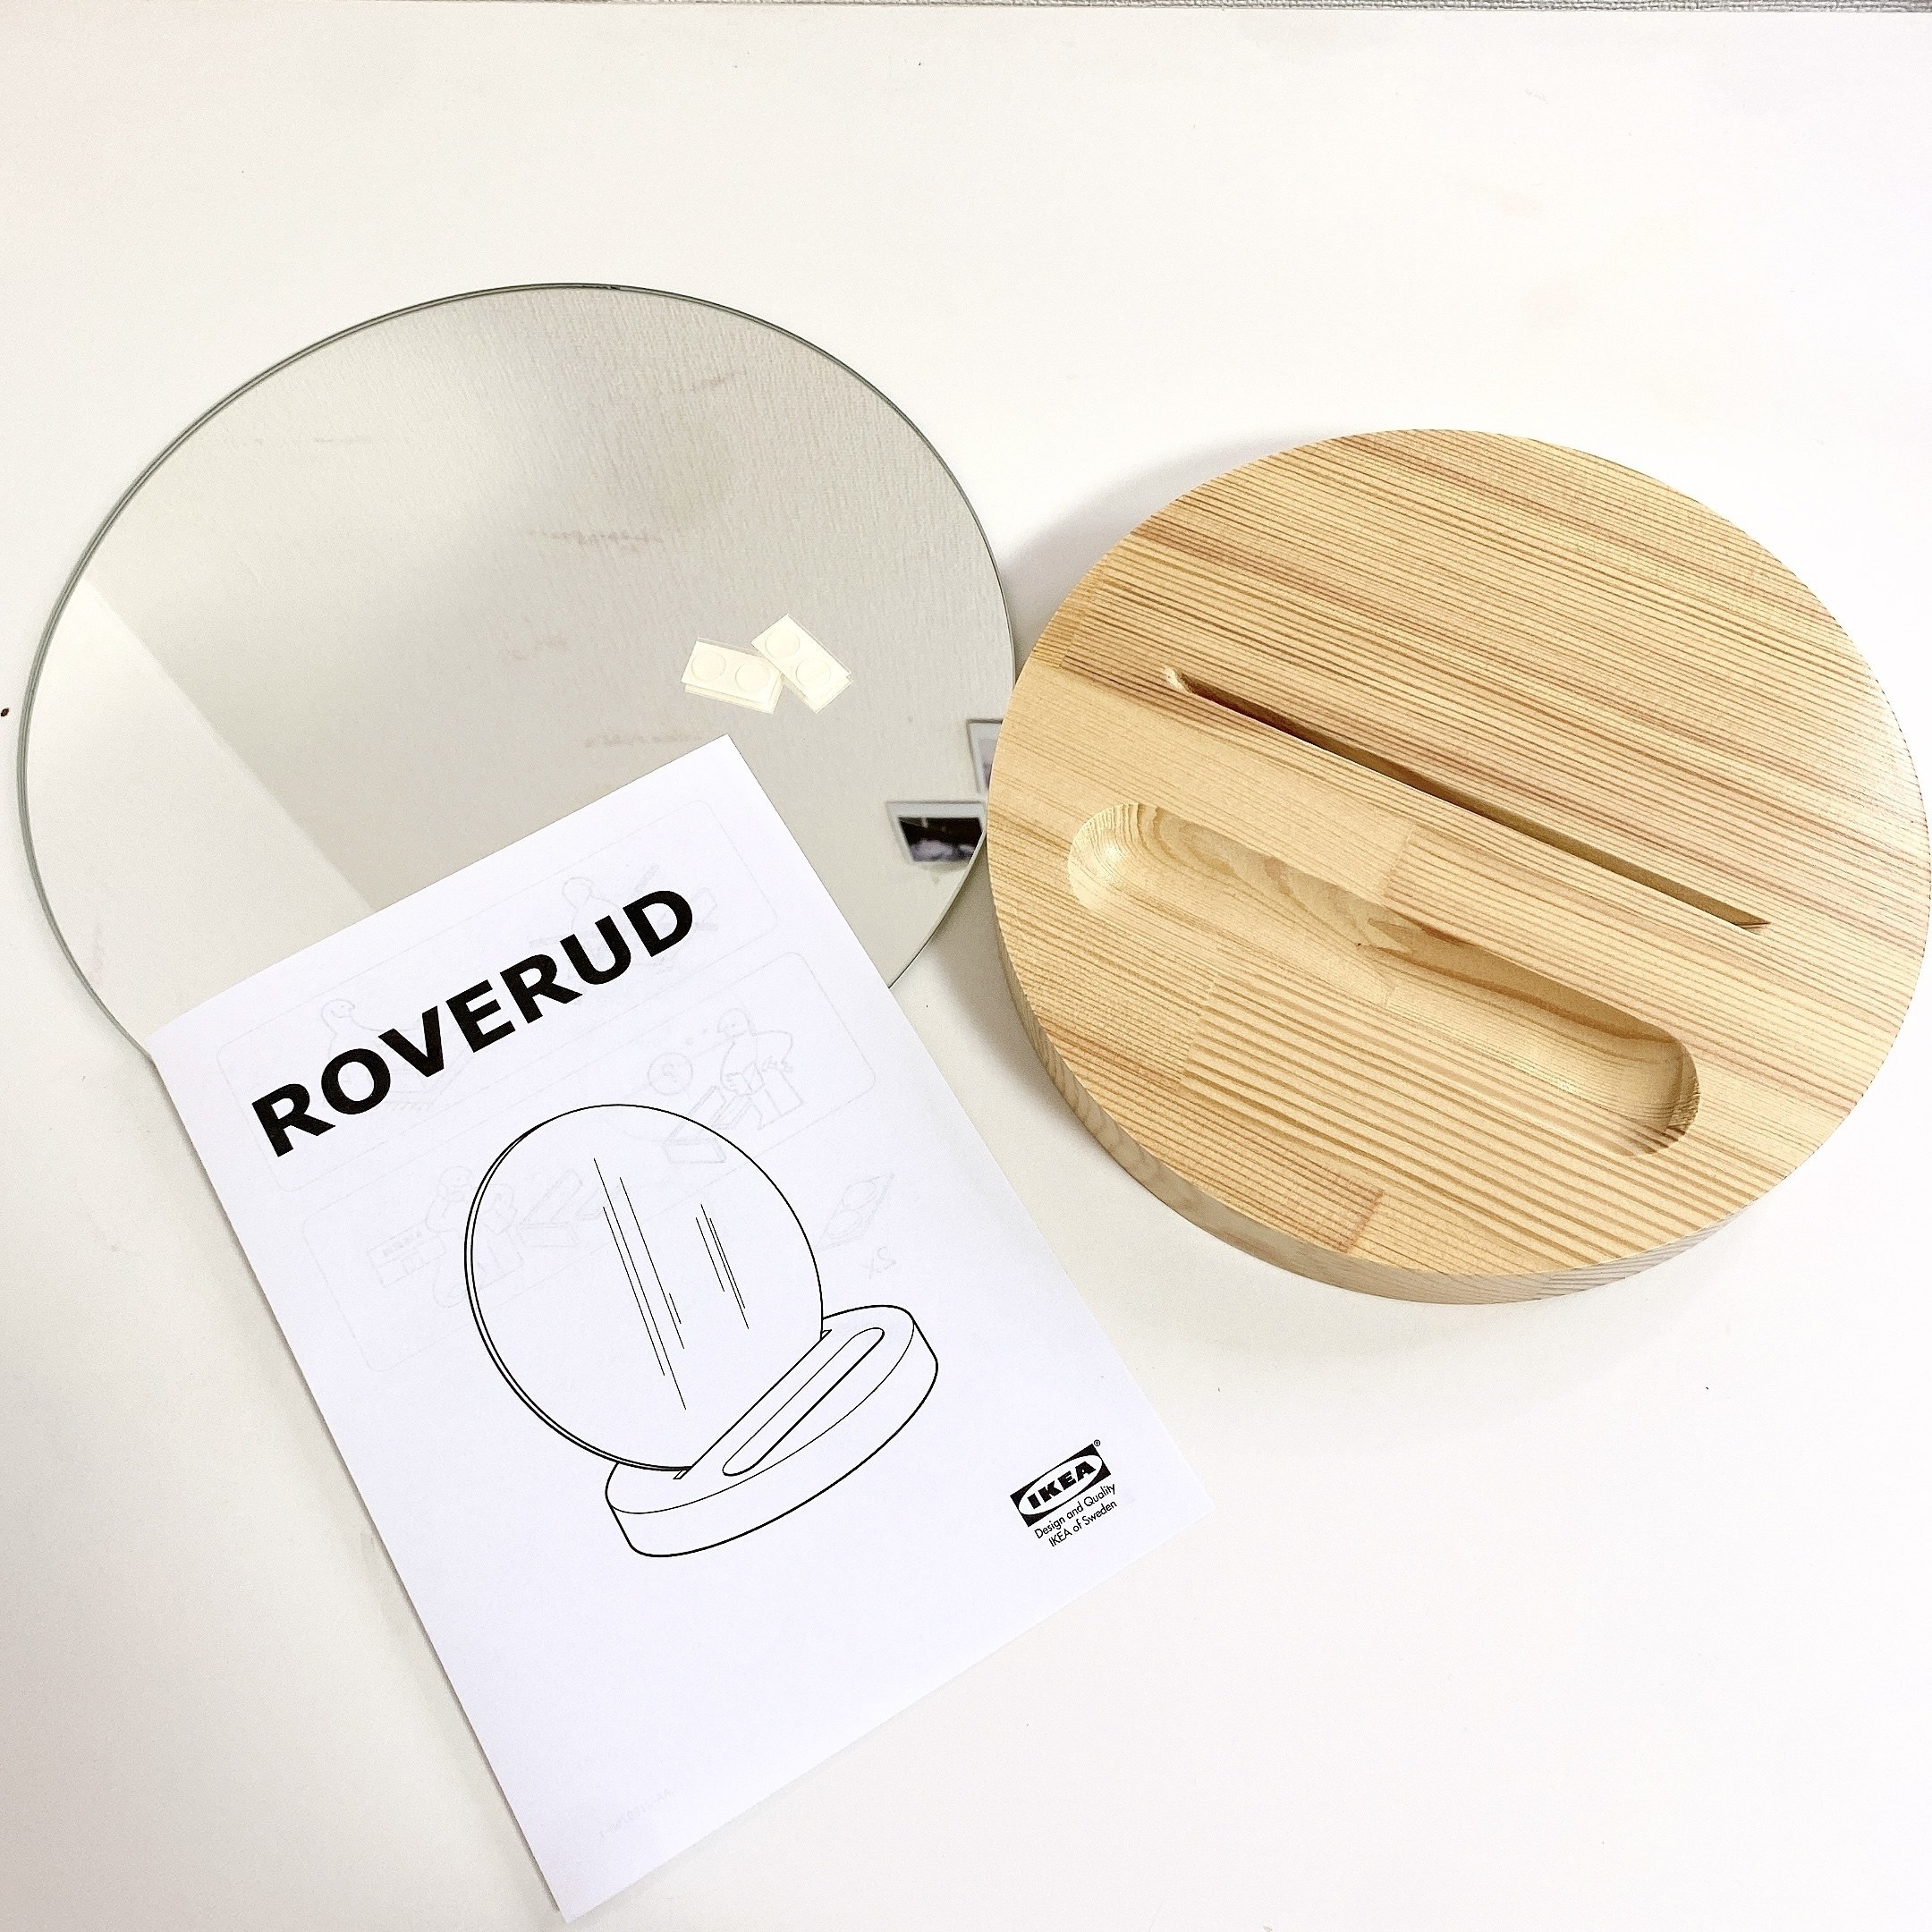 IKEA（イケア）の「ROVERUD（ルーヴェルード）」は、シンプルでおしゃれなテーブルミラーでおすすめです！